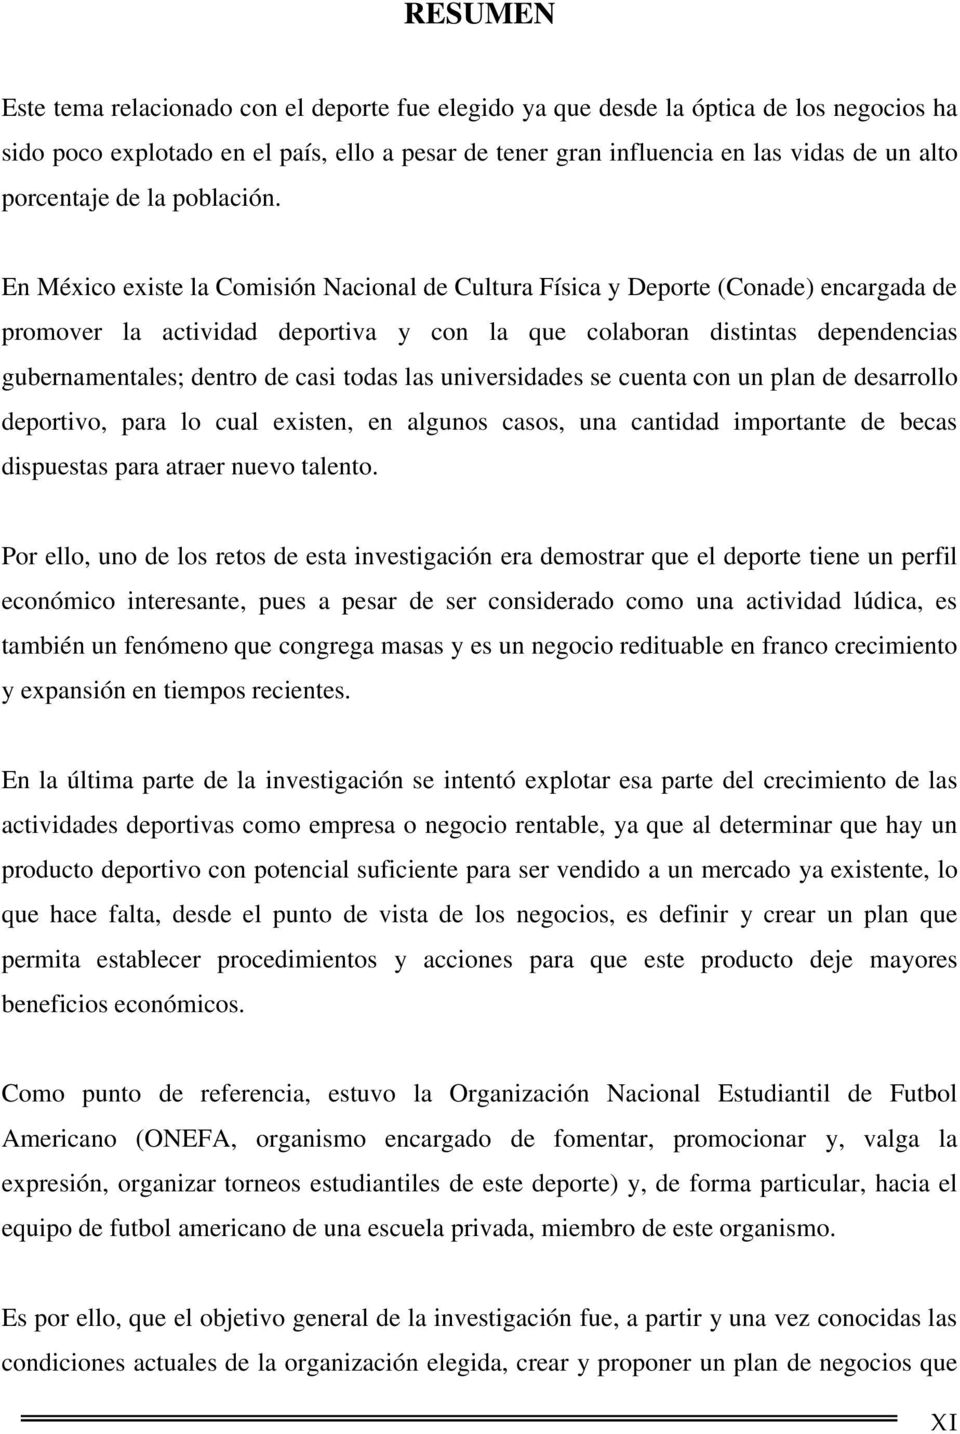 En México existe la Comisión Nacional de Cultura Física y Deporte (Conade) encargada de promover la actividad deportiva y con la que colaboran distintas dependencias gubernamentales; dentro de casi